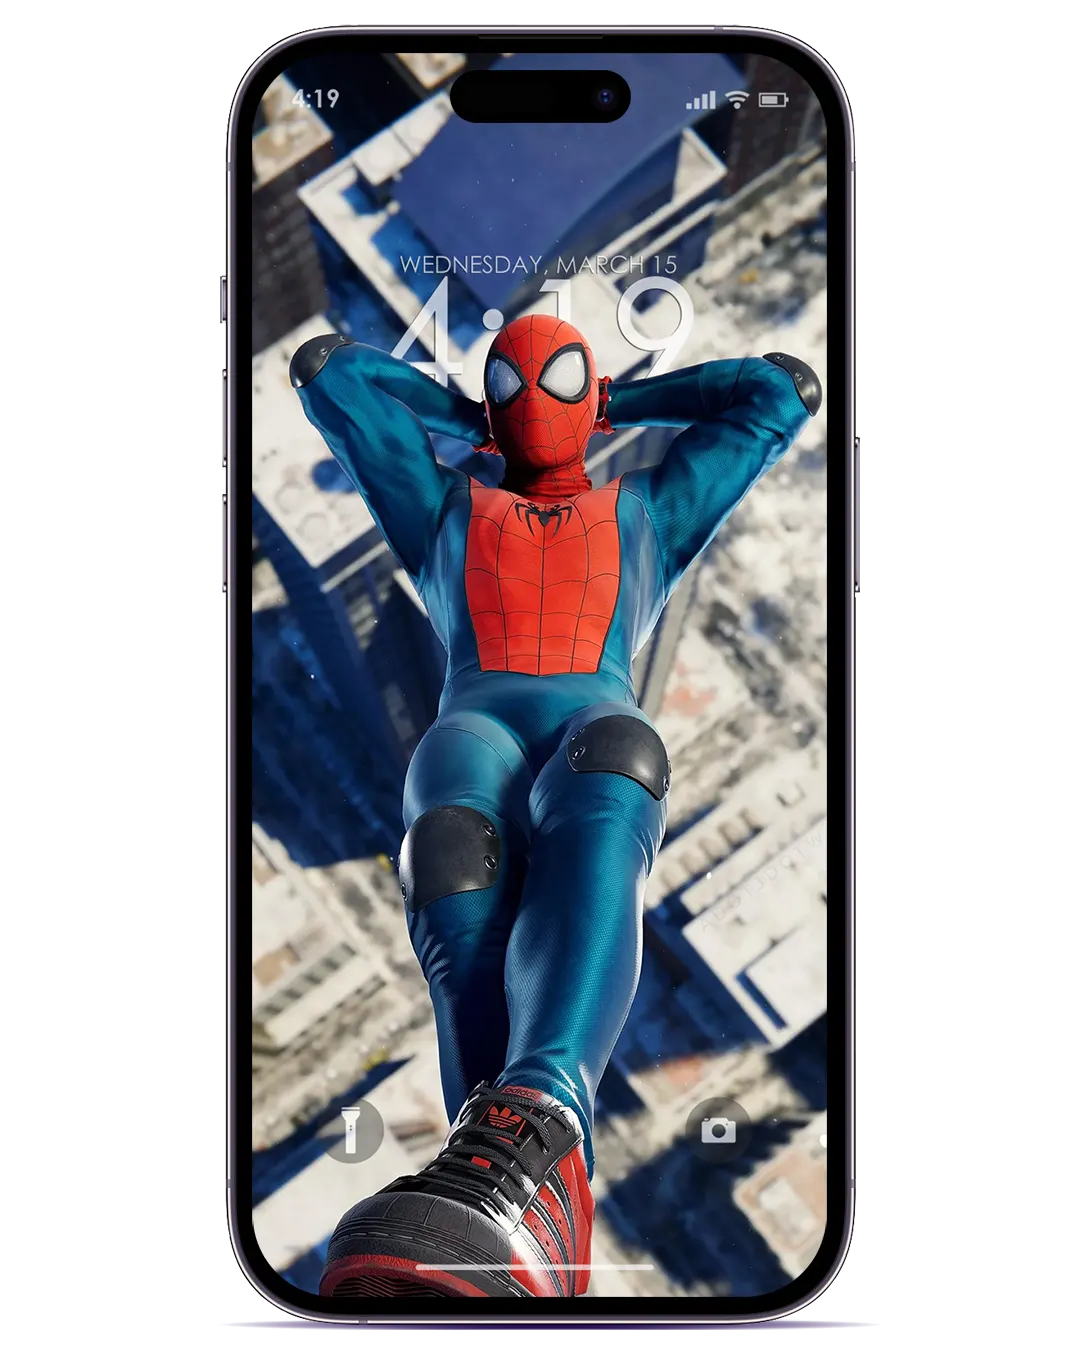 Bạn là một fan cuồng Spider-Man? Đừng bỏ qua ảnh nền điện thoại Spider-Man 3D đầy phấn khích này! Với hình ảnh chân thực và chất lượng cao, bạn sẽ cảm nhận được khoảnh khắc đang leo trèo, bắn tơ và mạo hiểm cùng siêu anh hùng yêu thích của mình. Hãy để khả năng chiến đấu của bạn được cải thiện với ảnh nền tuyệt đẹp này.